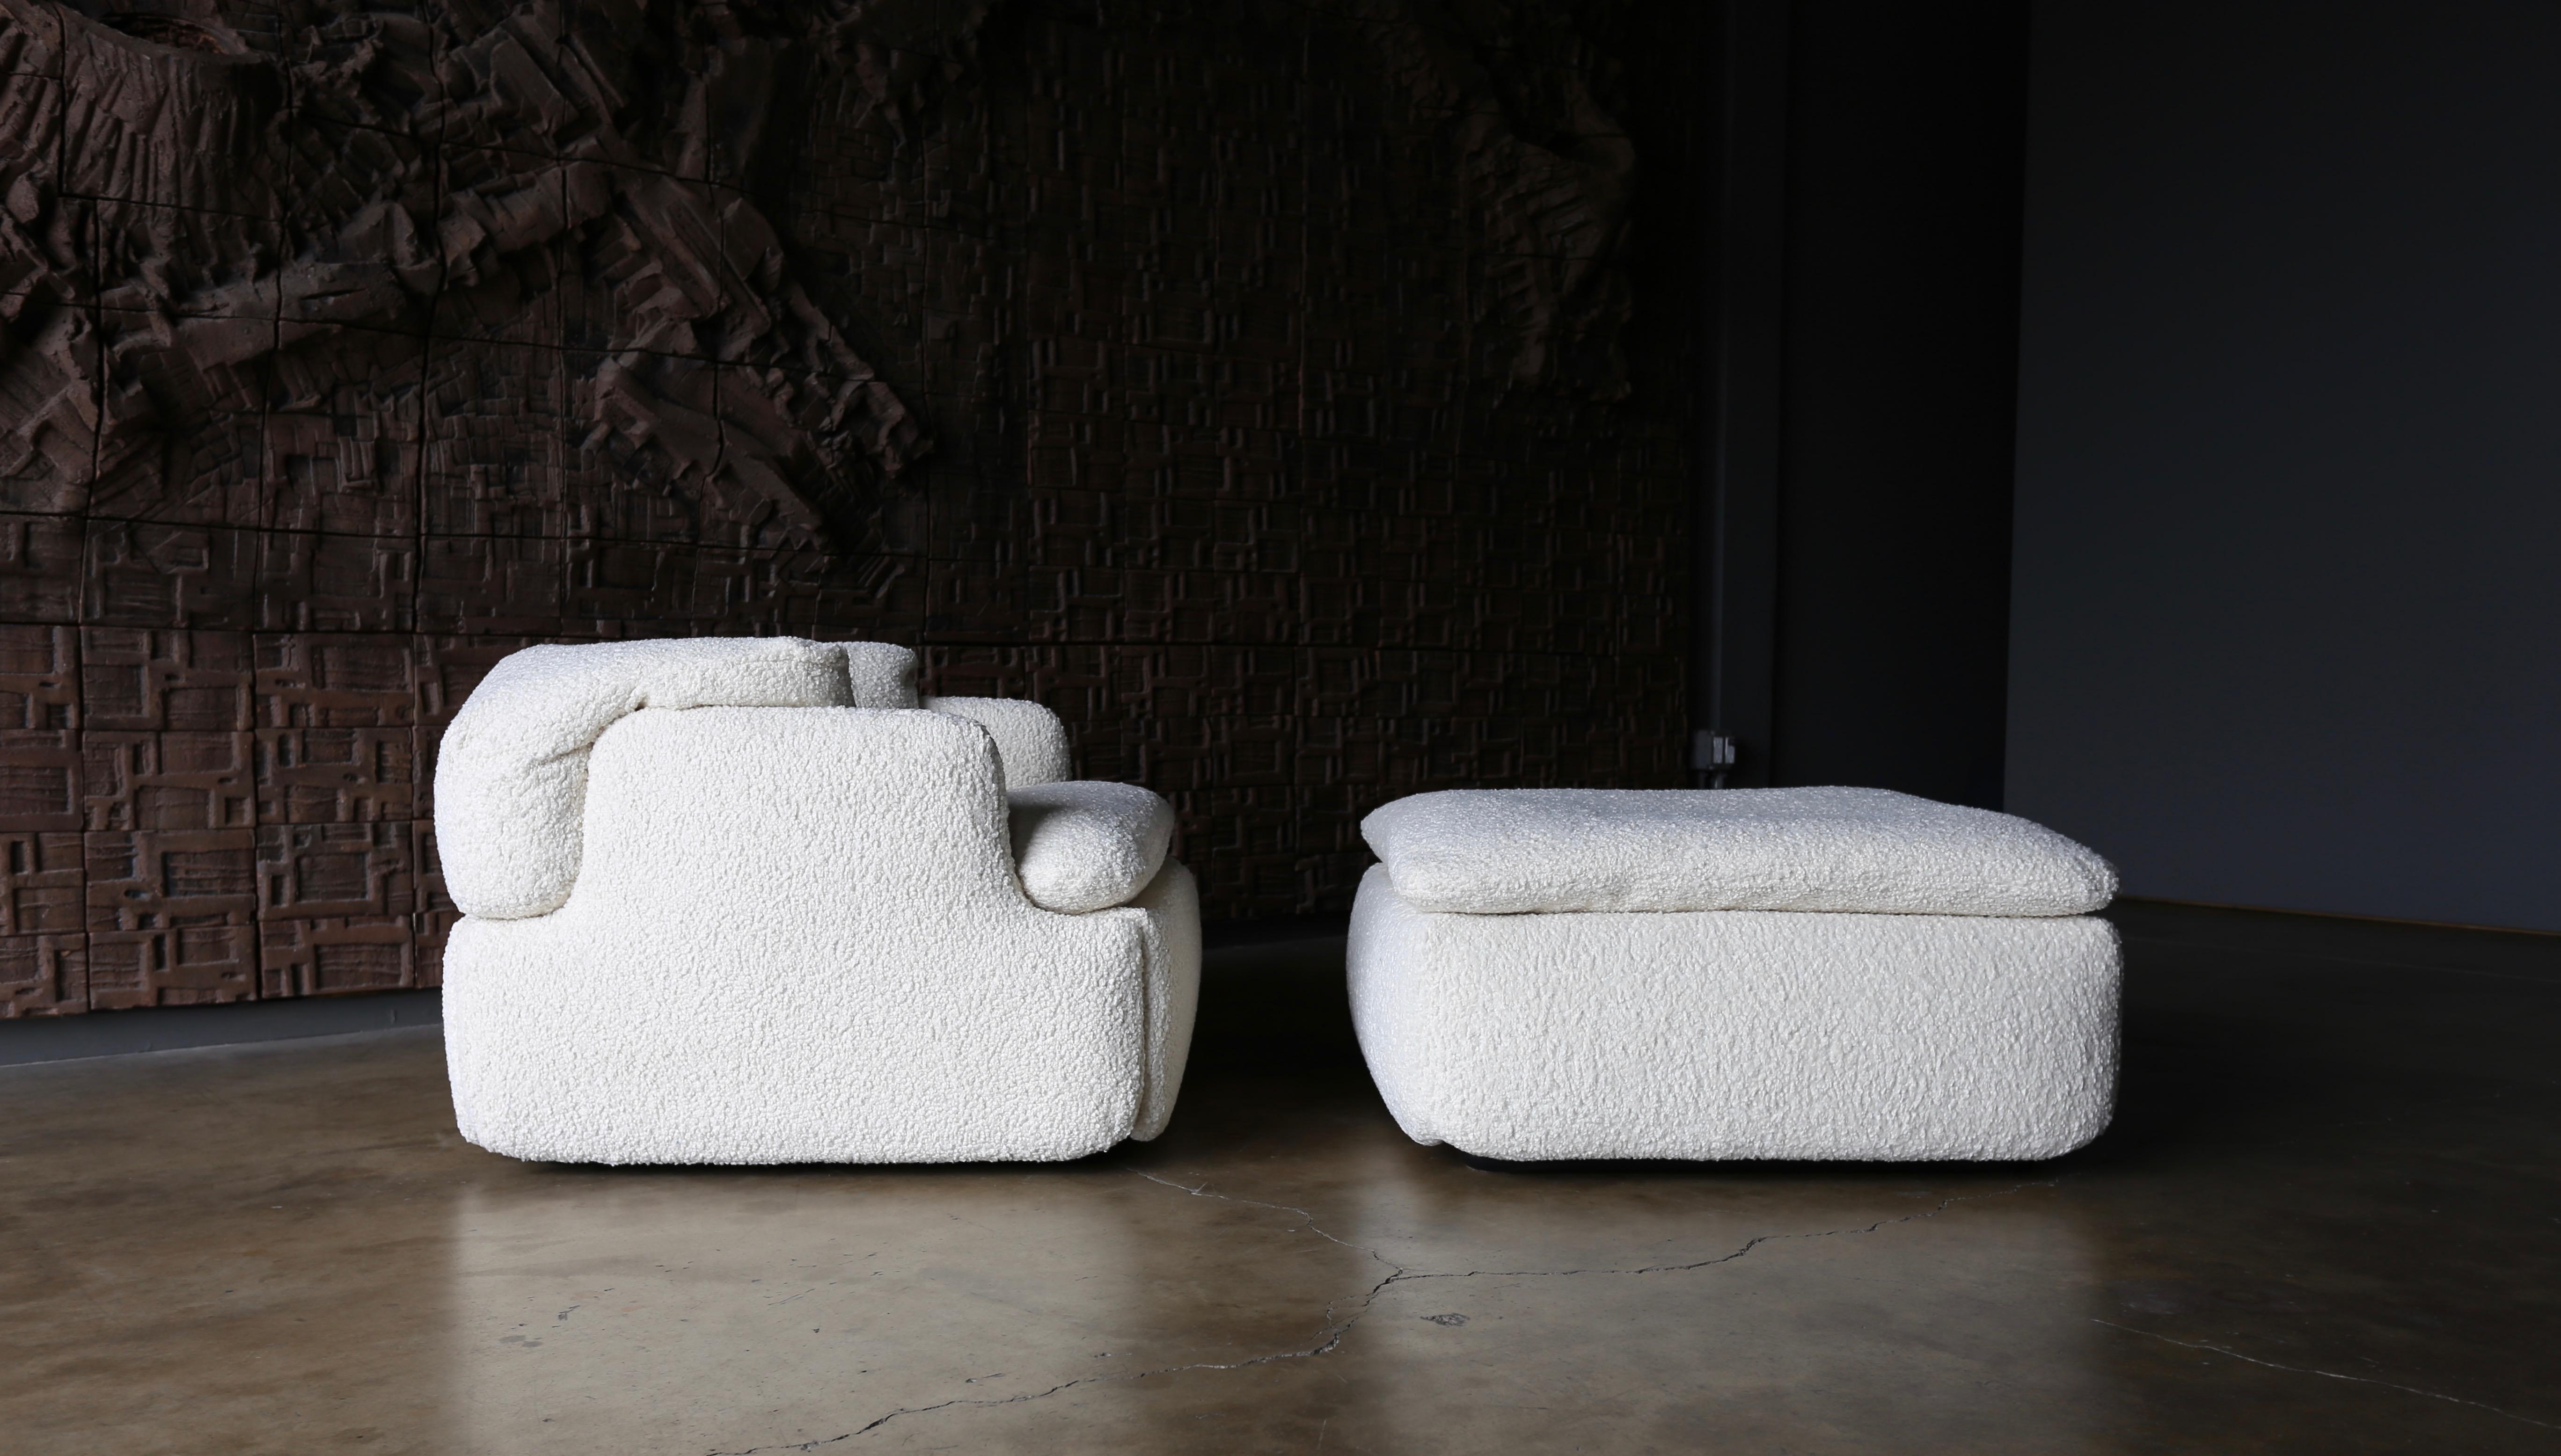 Plastic Alberto Rosselli for Saporiti 'Confidential' Lounge Chair & Ottoman, circa 1972